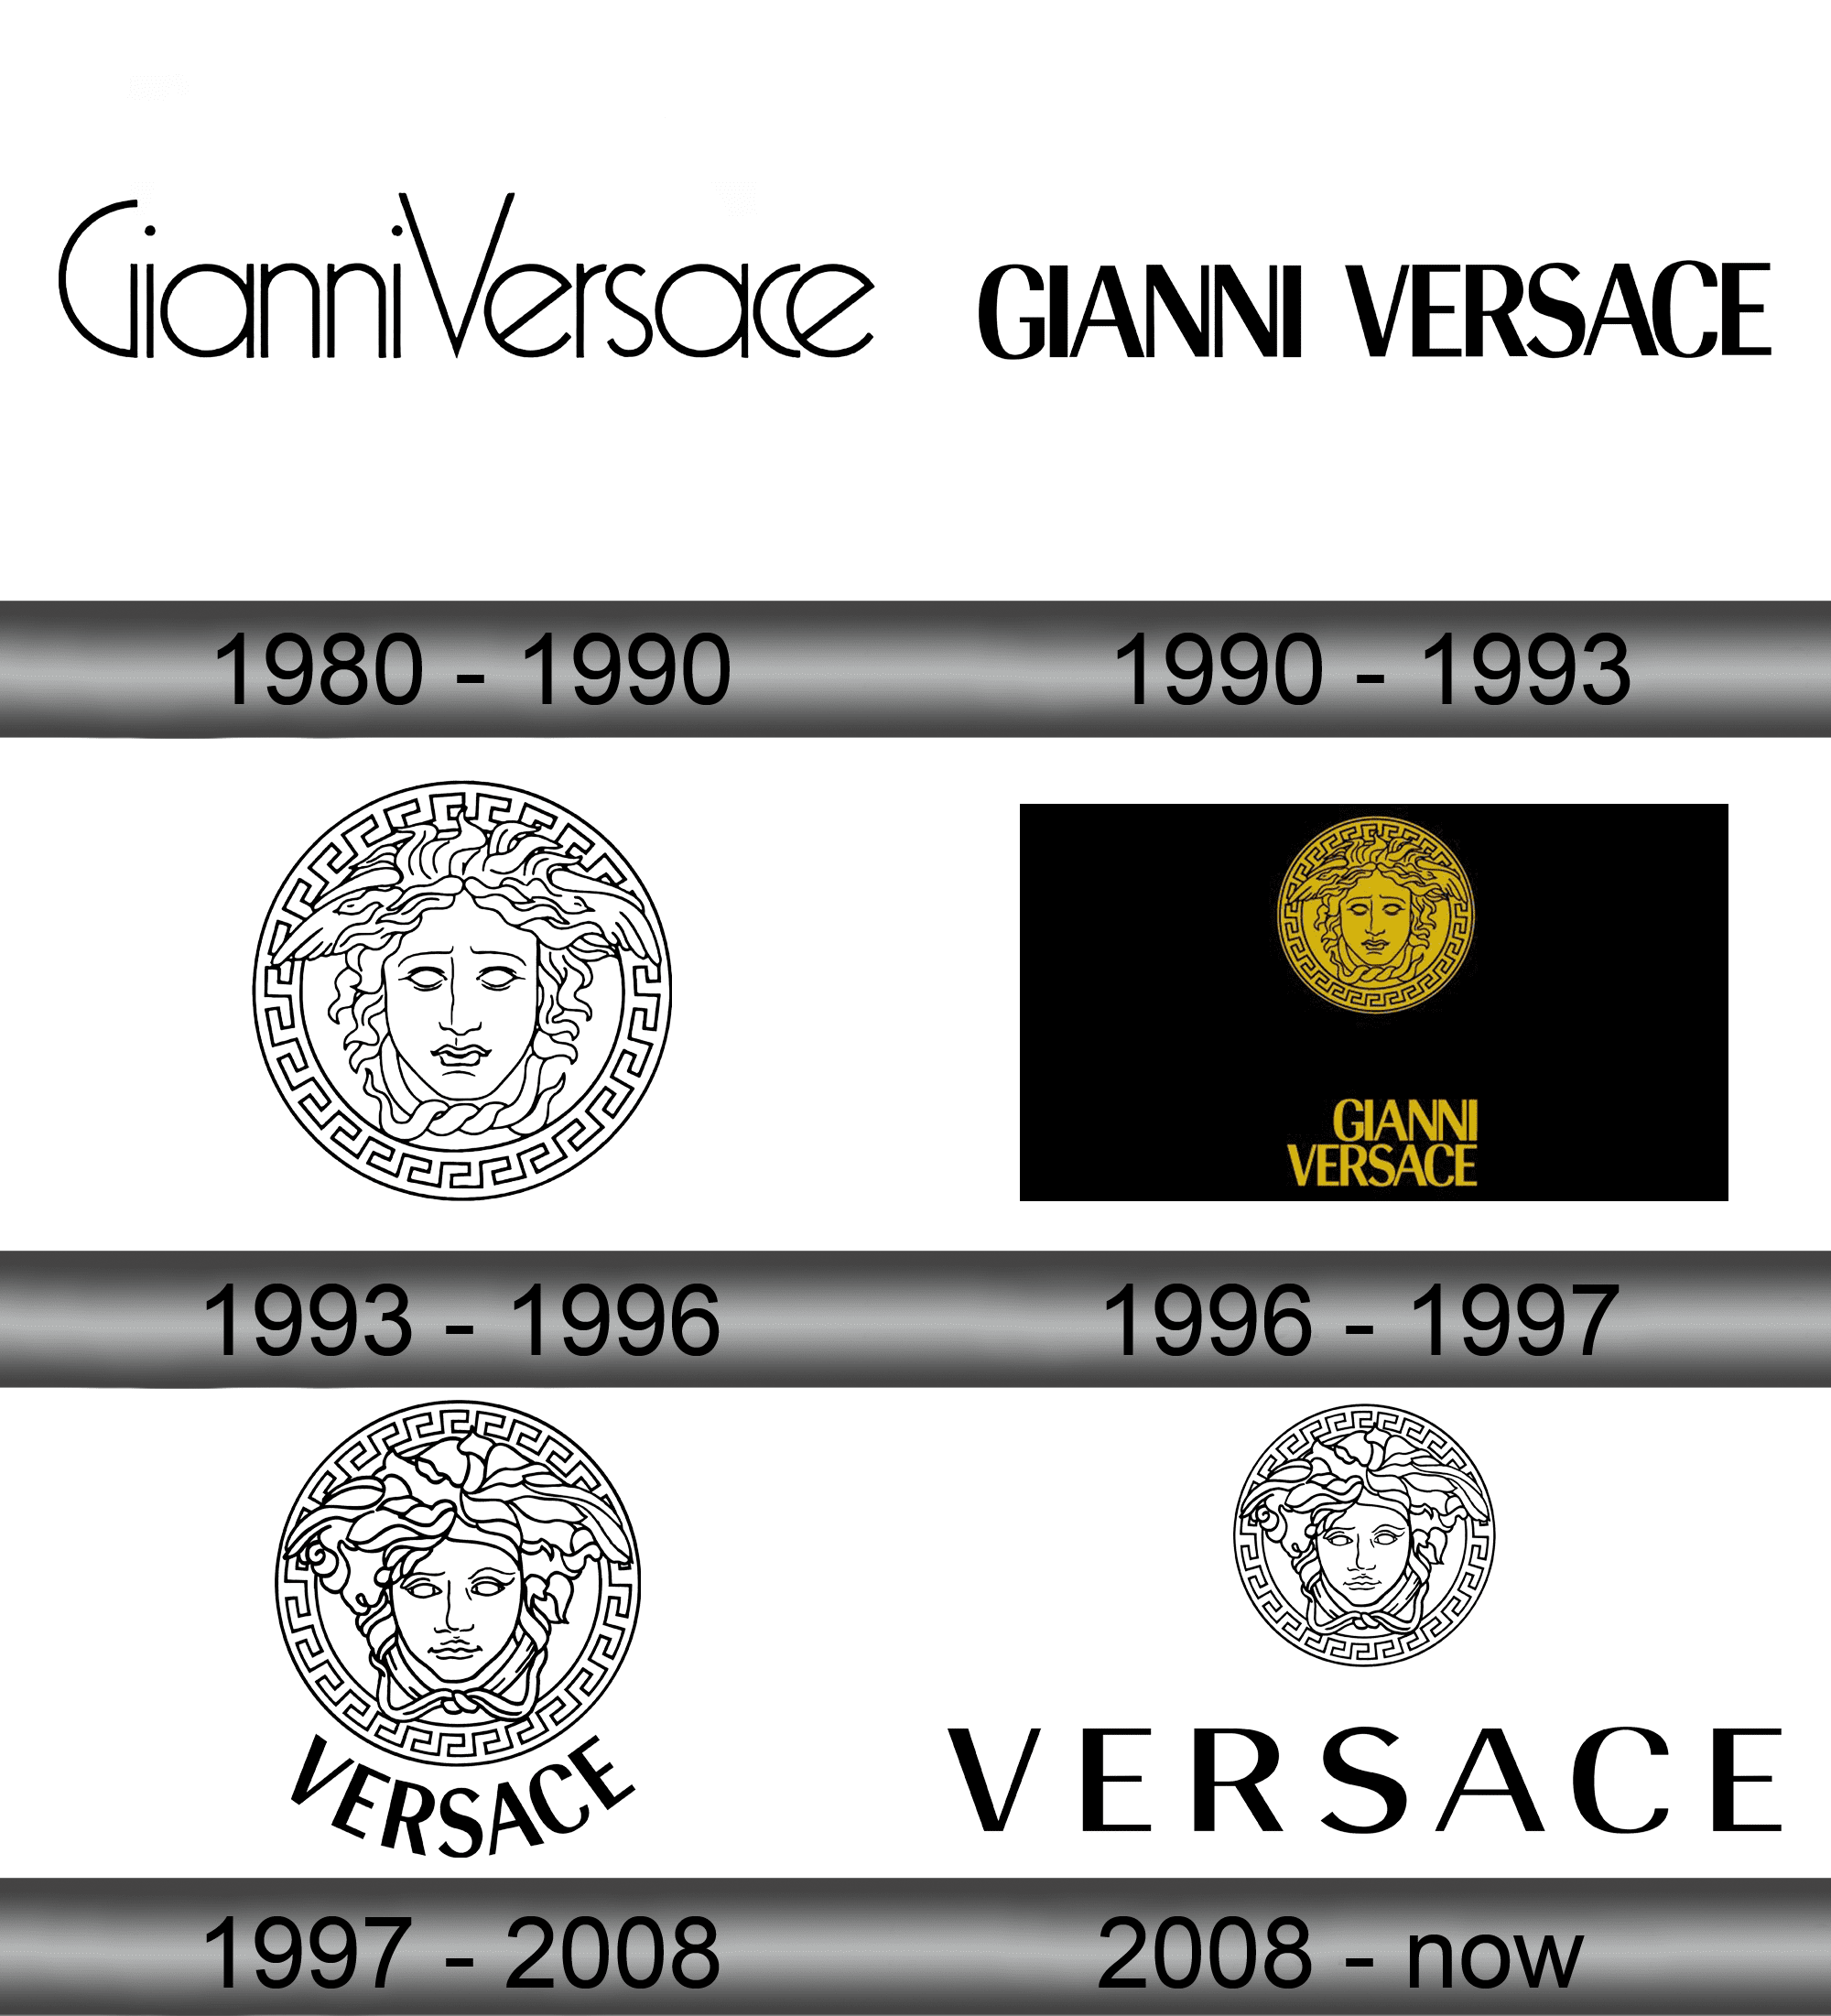 Thiết kế versace logos thể hiện sự tinh tế và quý phái